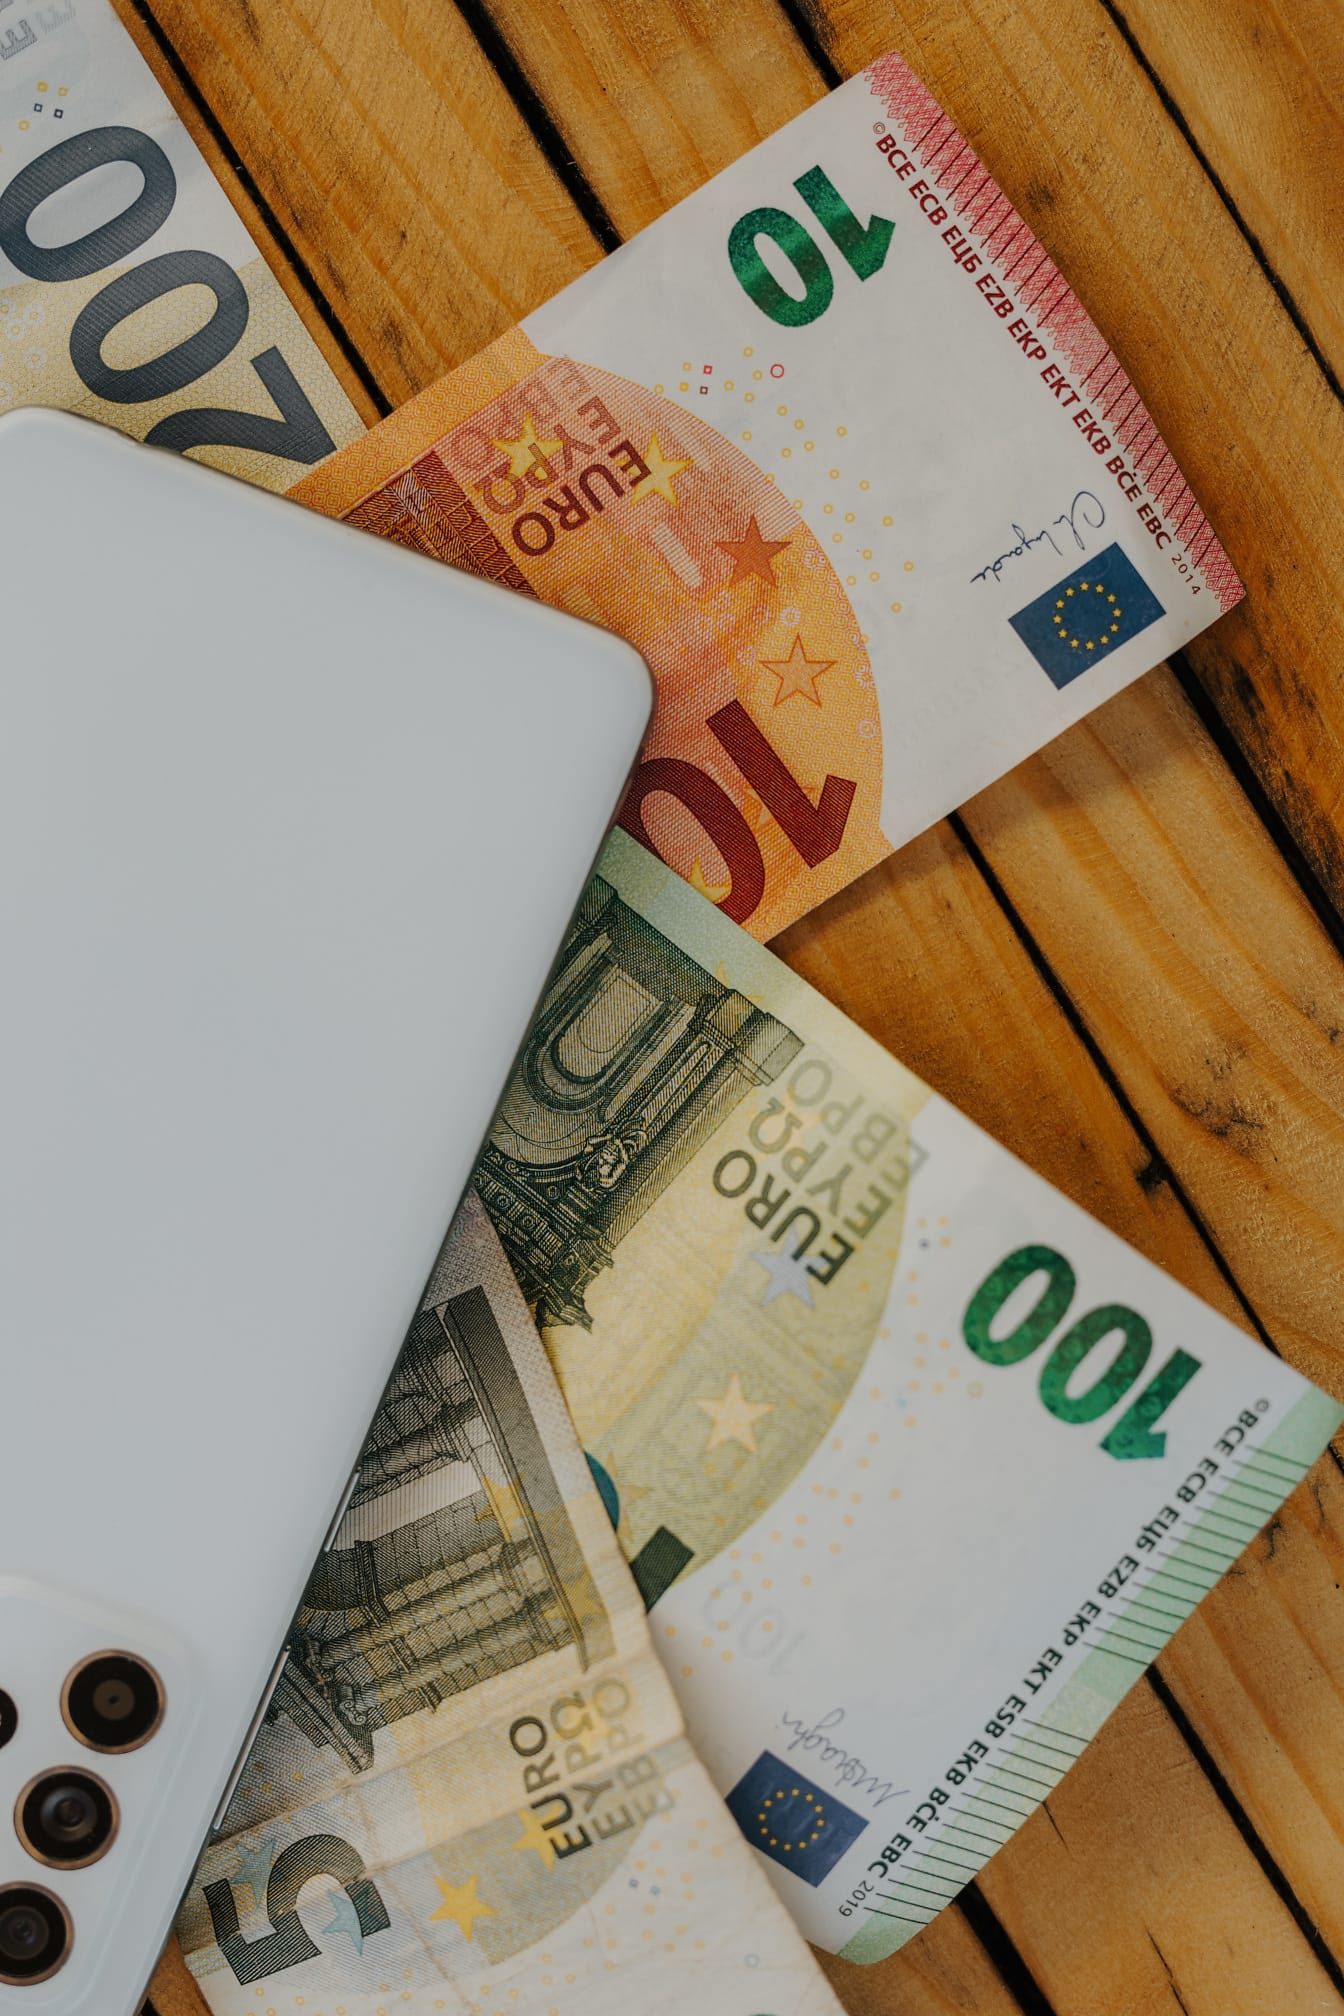 ユーロ紙幣、紙幣、木の板に白い携帯電話